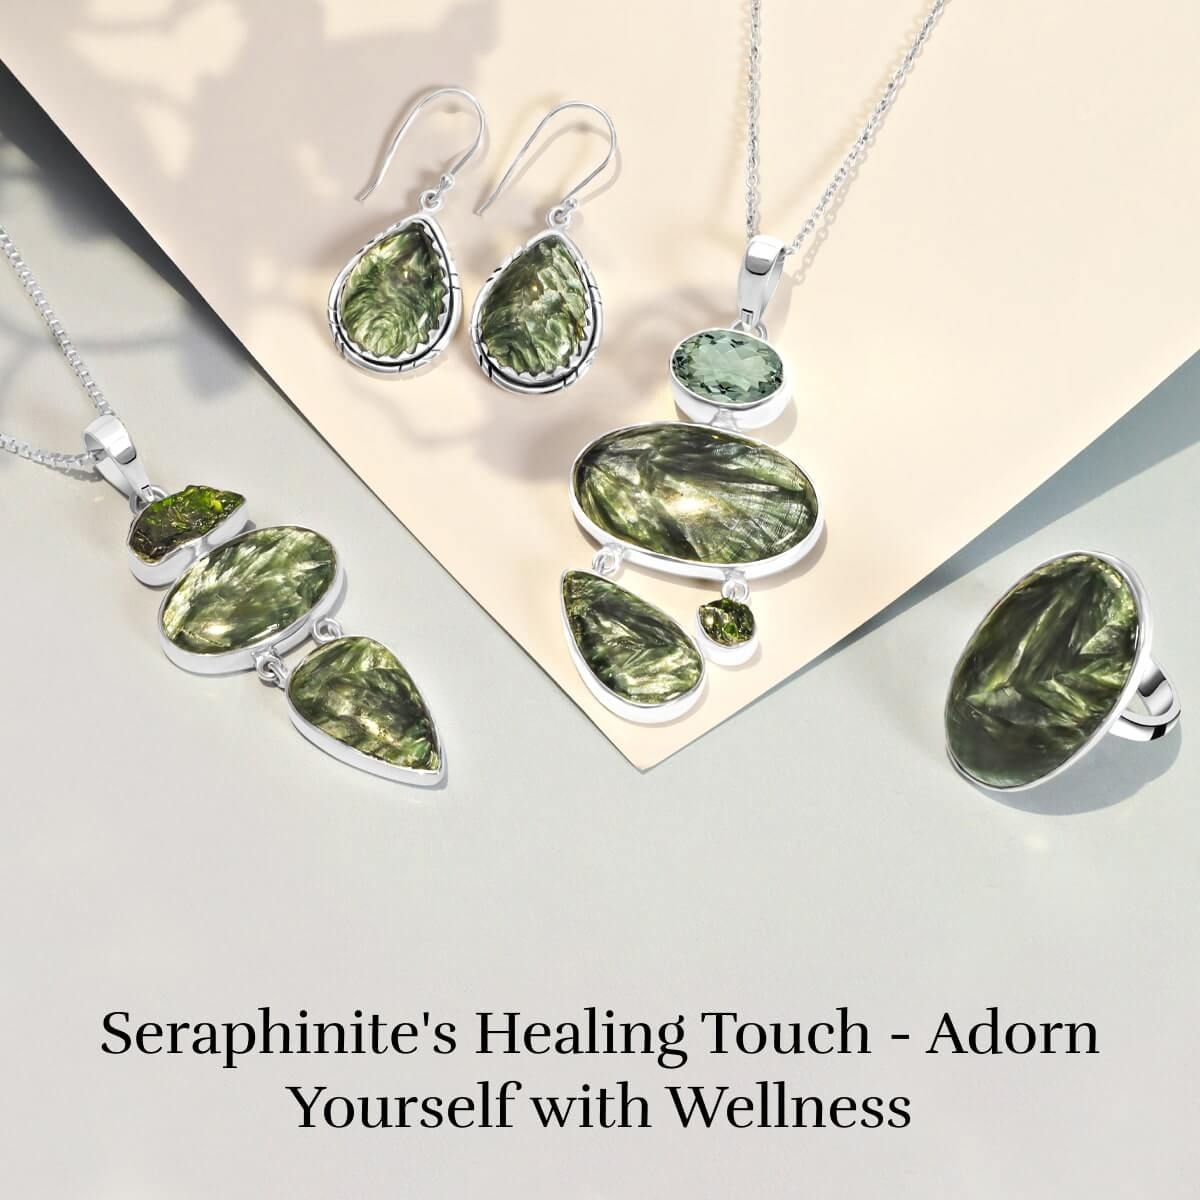 Seraphinite Gemstone Healing properties